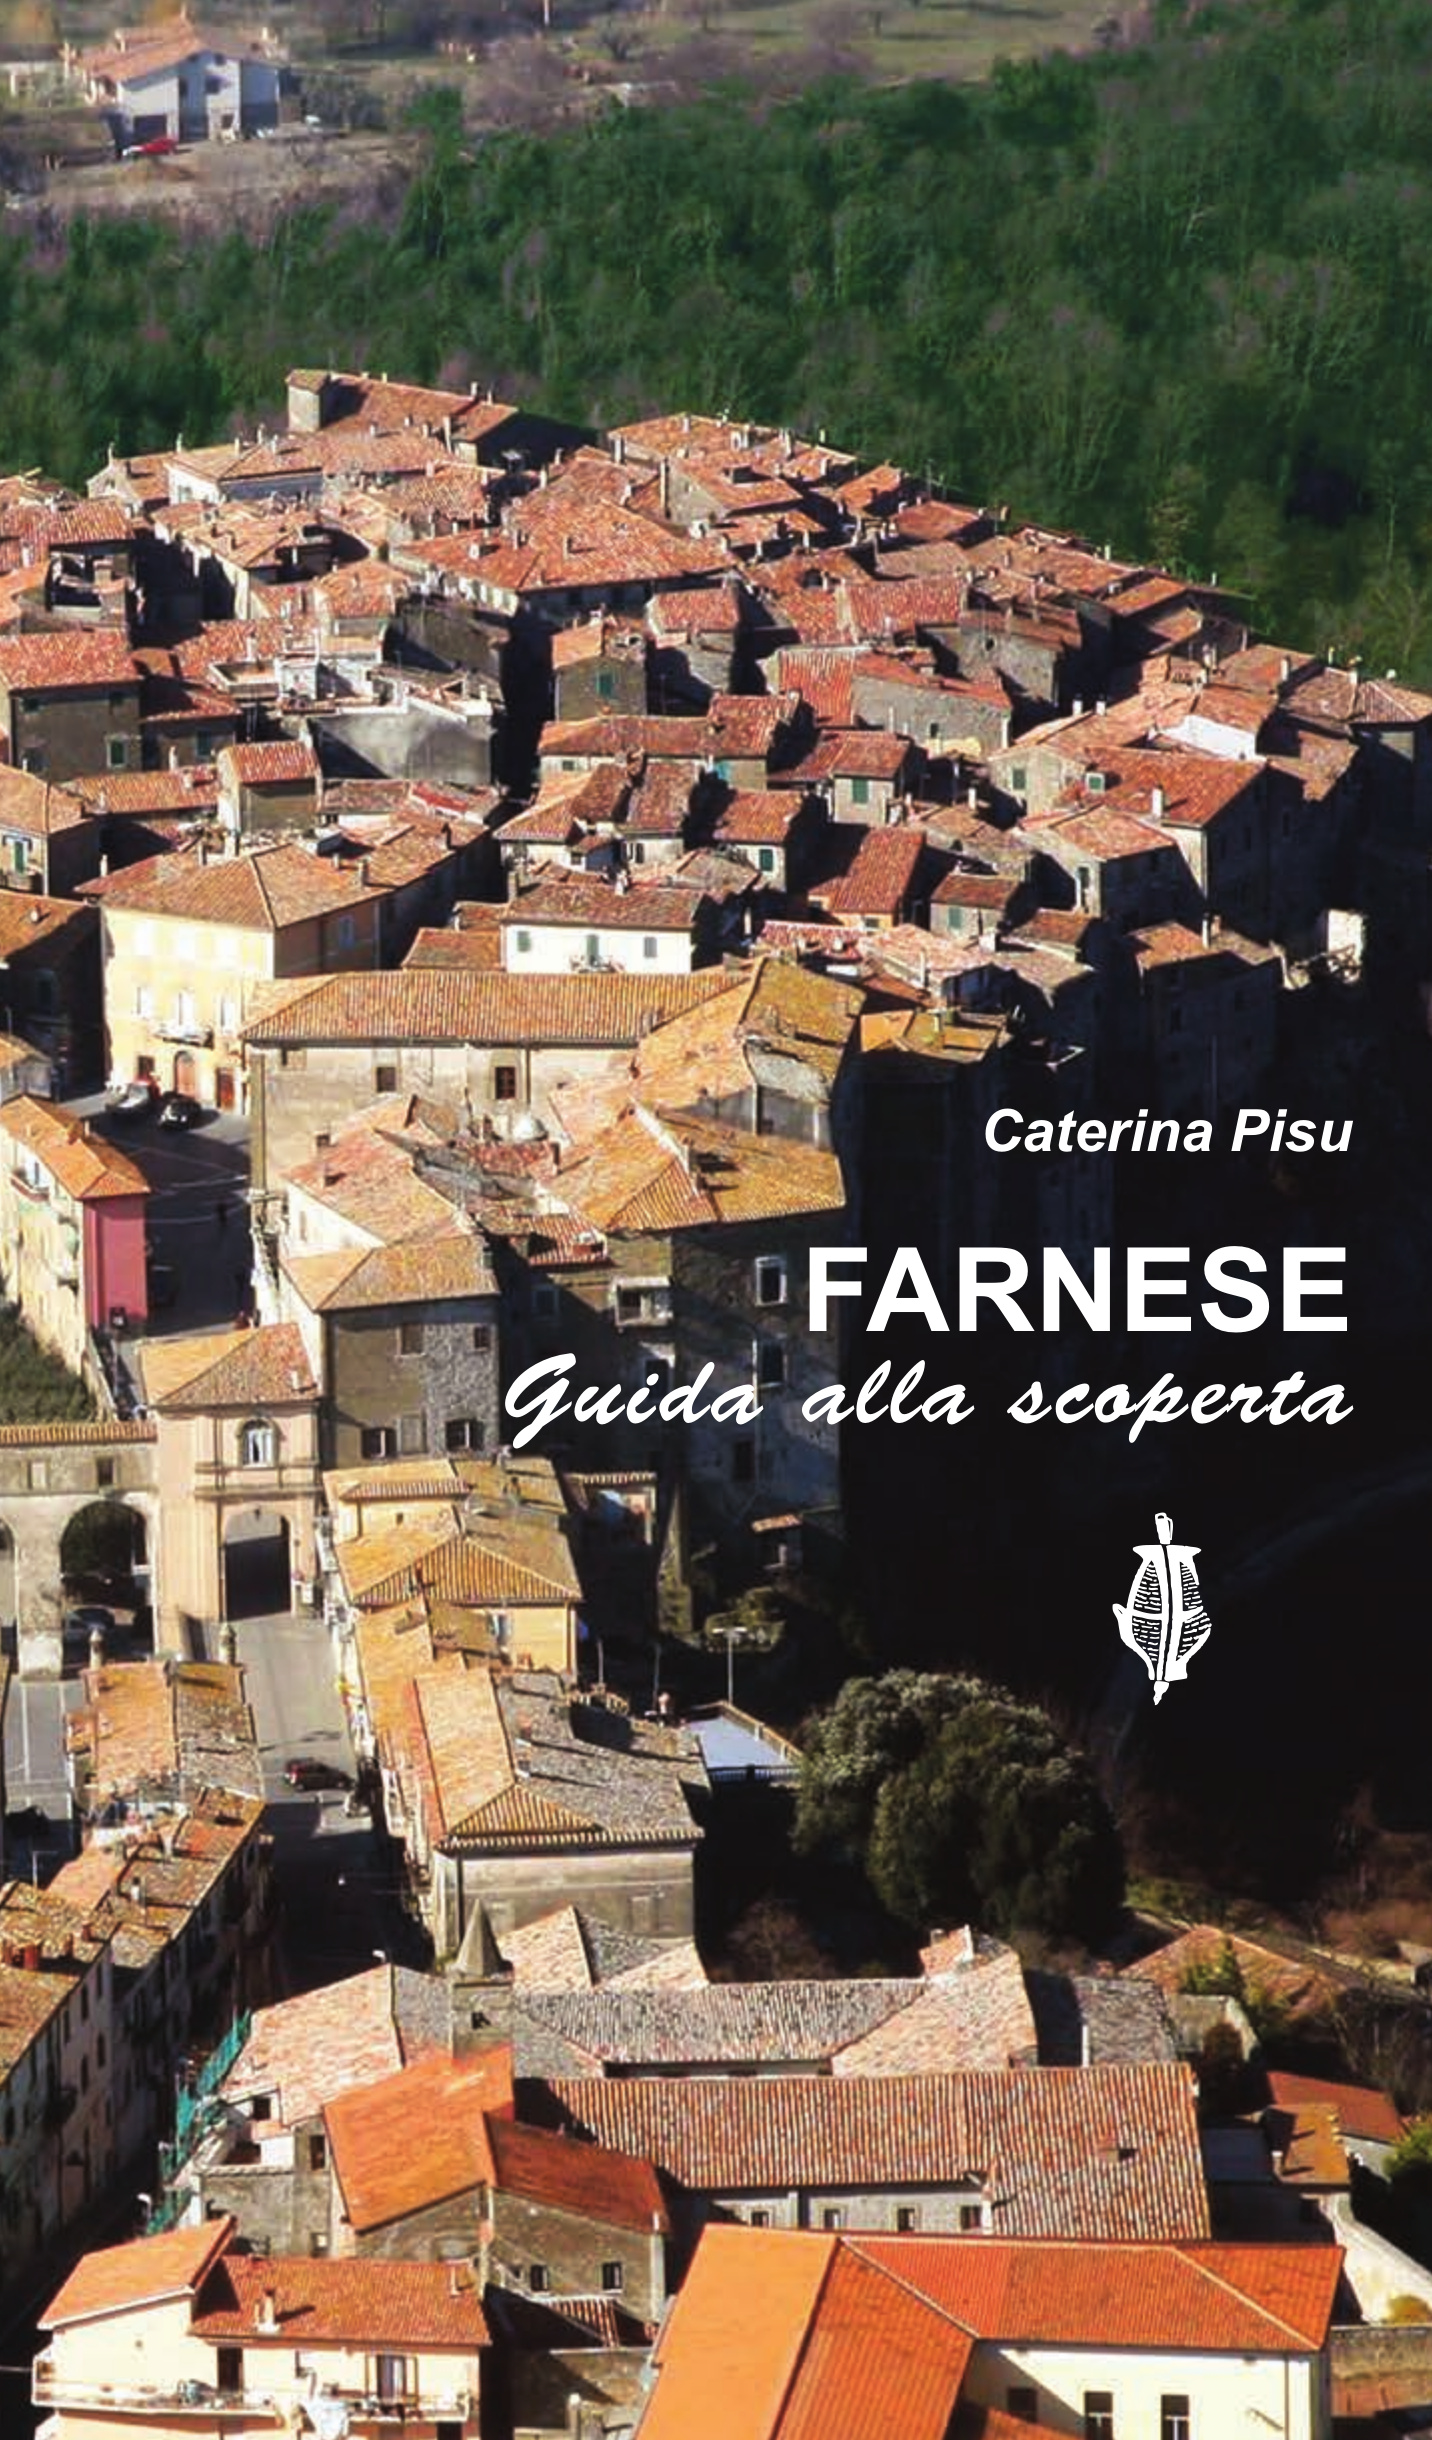 copertina Farnese_front